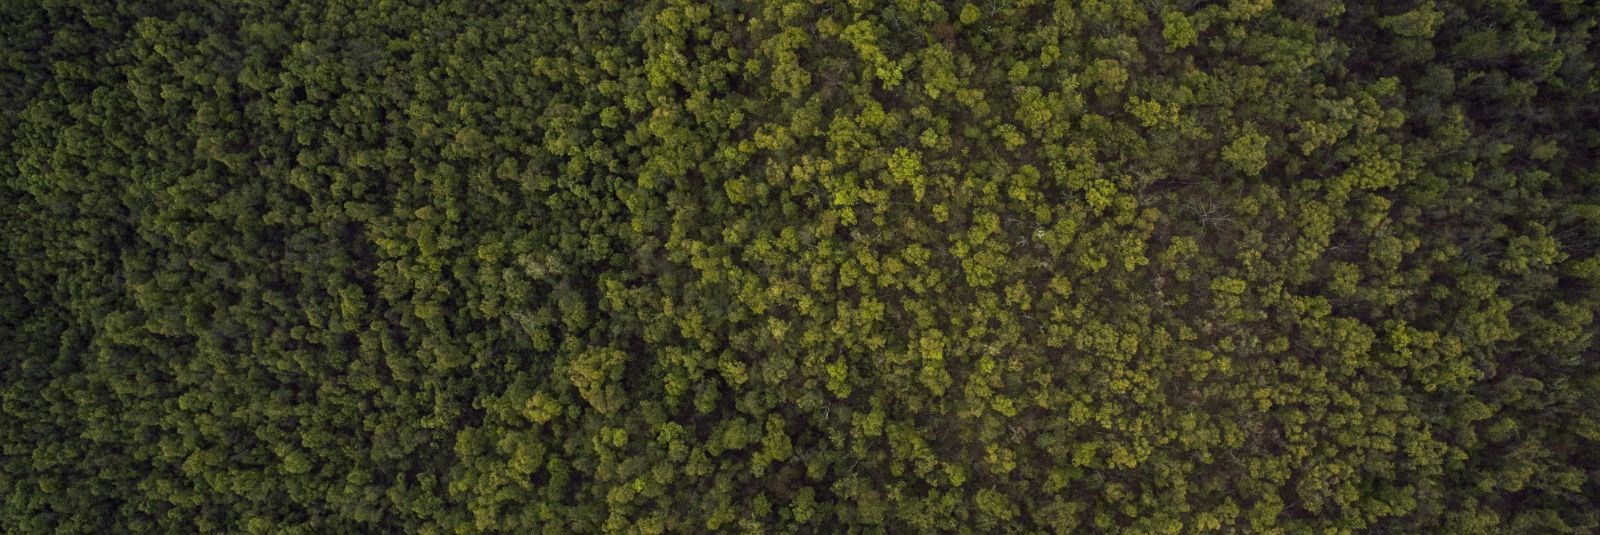 Alates 2007. aastast oleme olnud Eesti metsandussektoris tuntud kui usaldusväärne ja professionaalne partner. Mis alustas end ühe mehe visioonist, on nüüdseks k